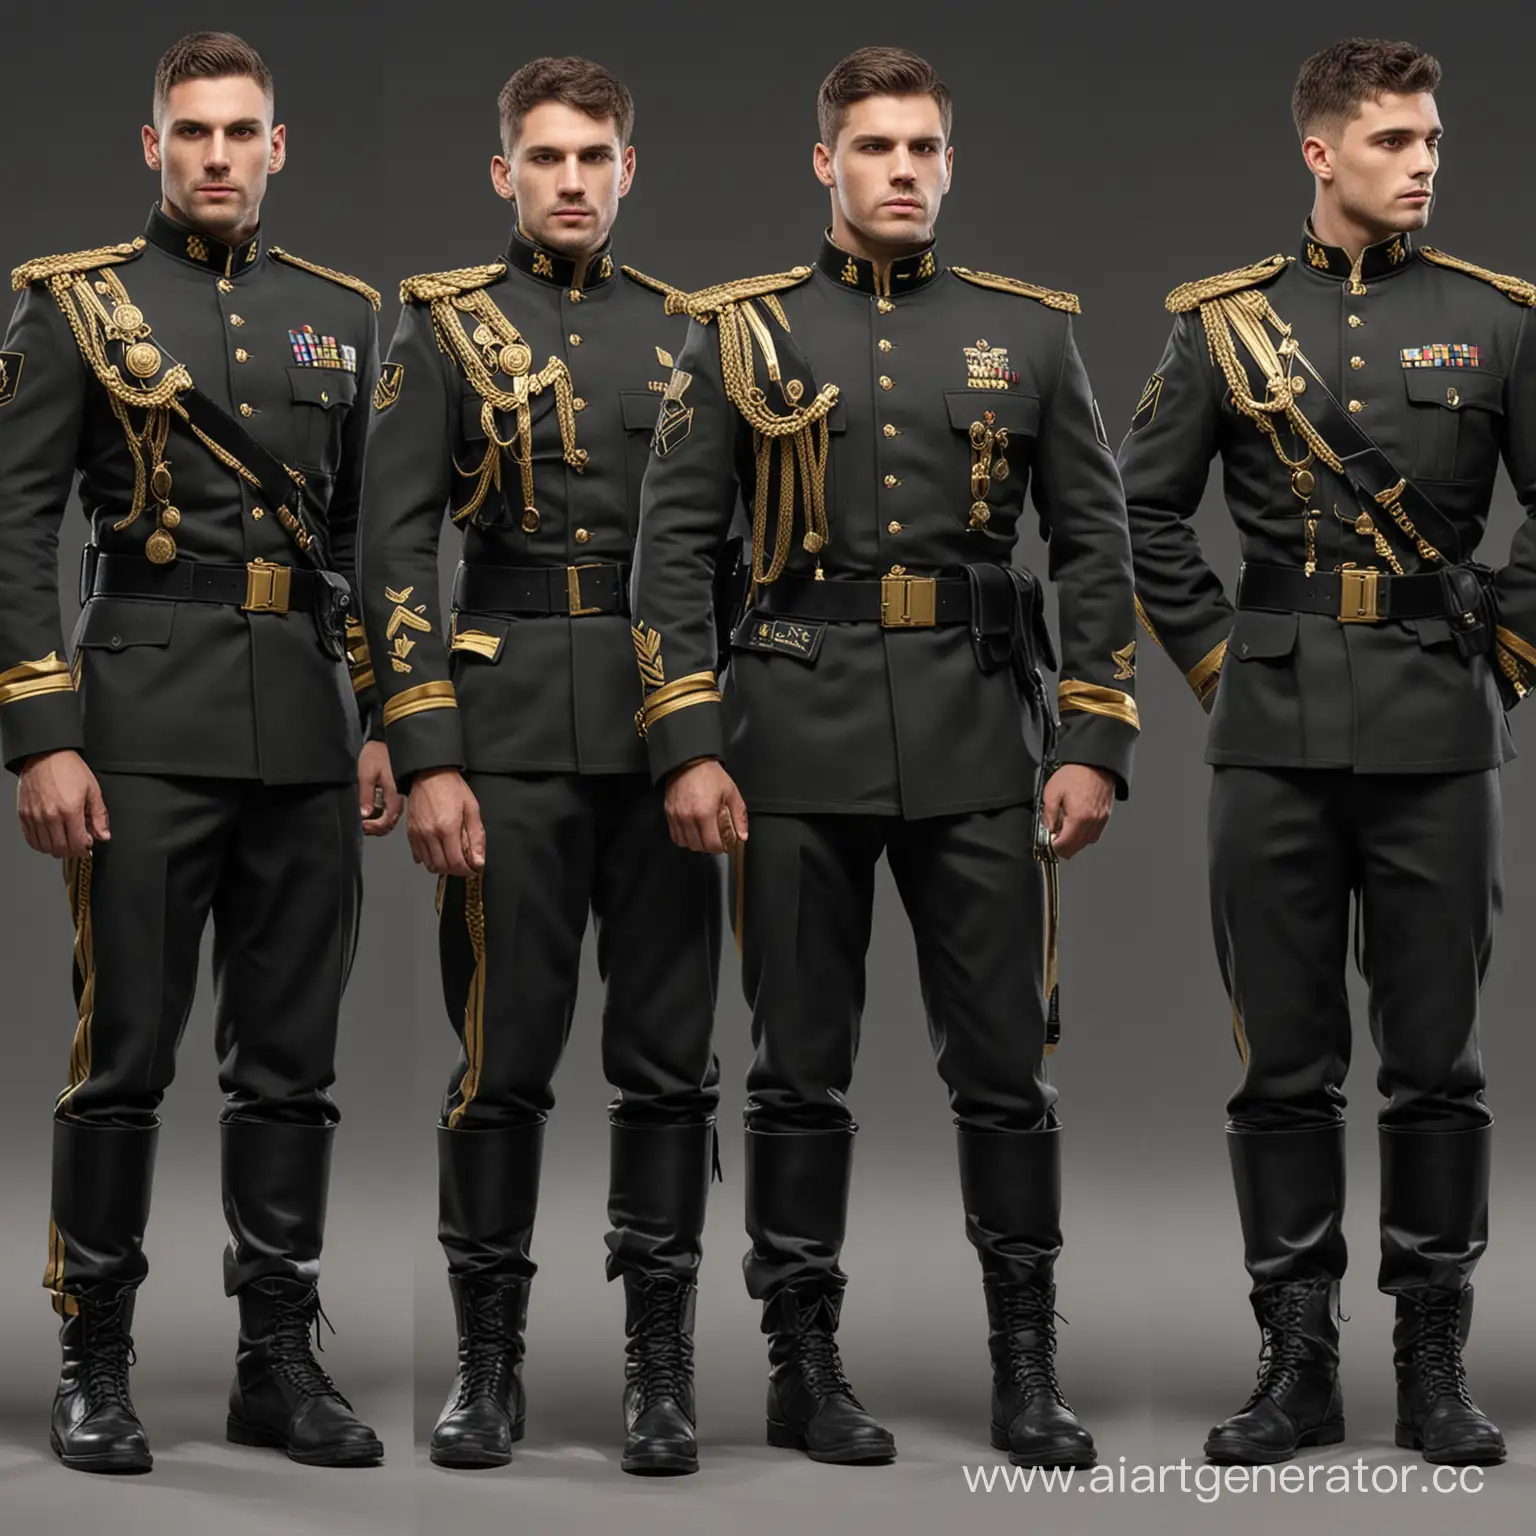 Пример обмундирования солдат "Каэдес" — частной военной организации. В черной, золотой, и серой цветовой гамме.